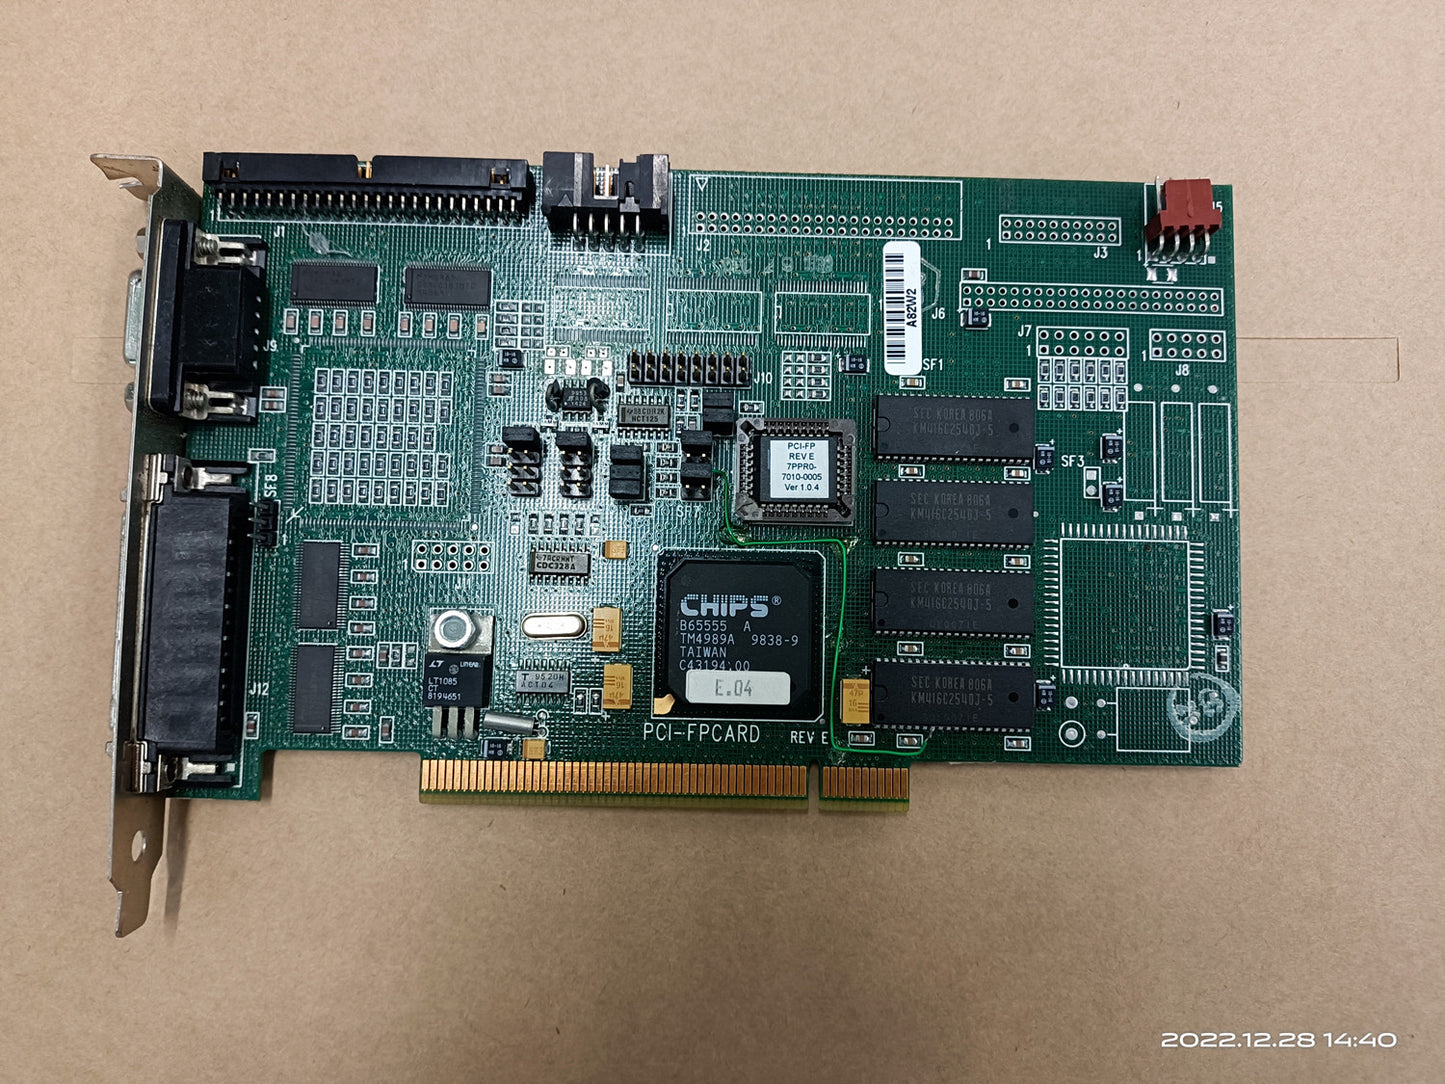 1PCS USED PCI-FPCARD REV E #OYF005 J1688